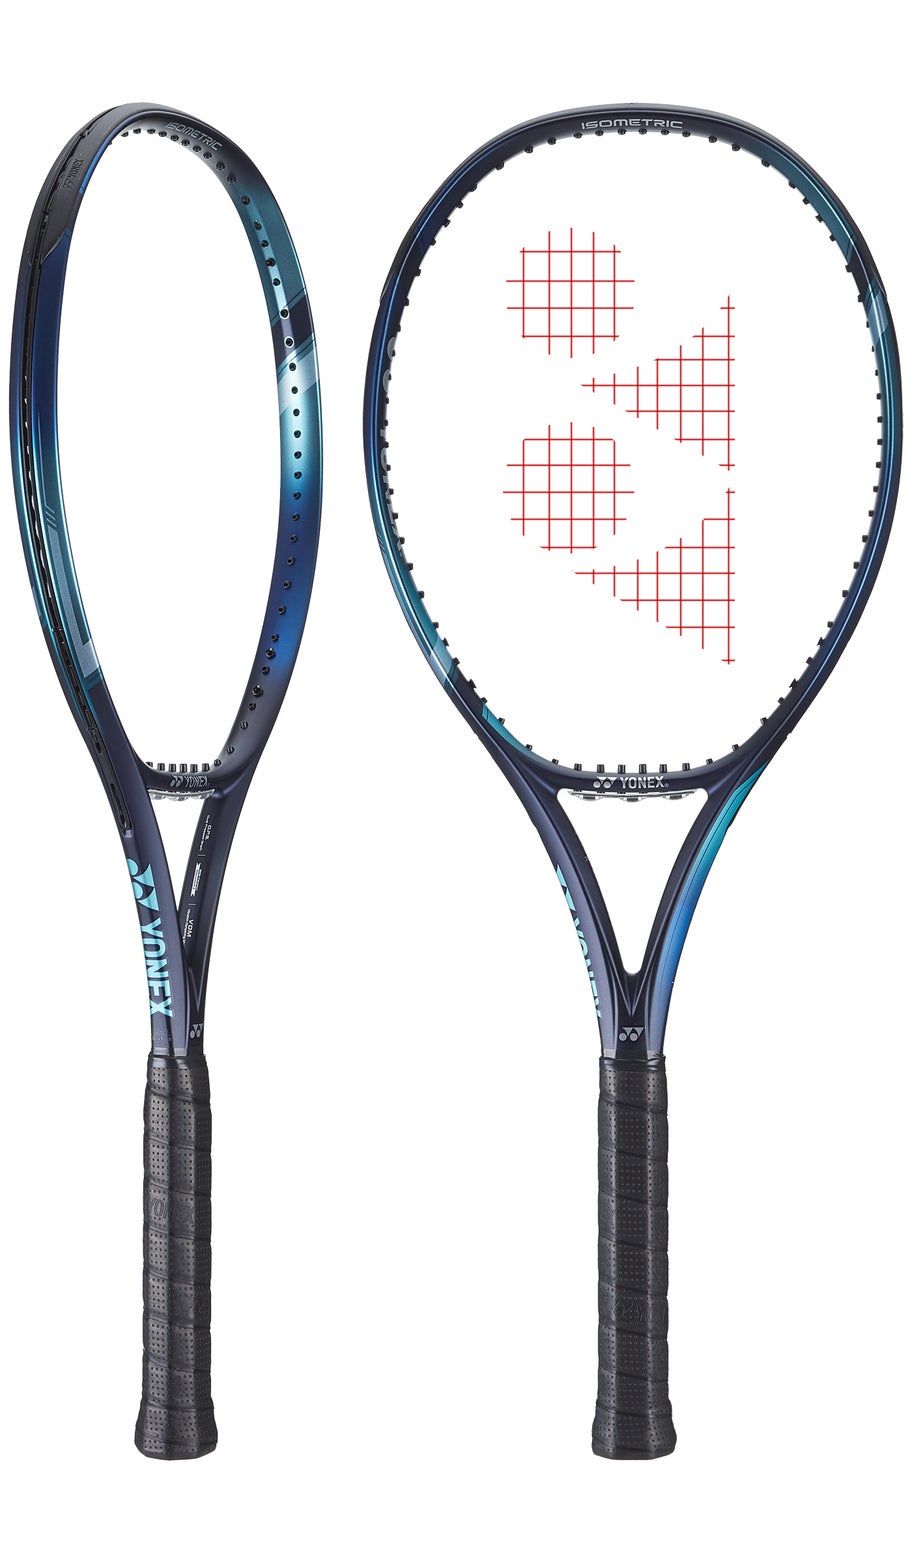 Yonex EZONE 100 (300g) 2022 tennis racket - NEW ARRIVAL